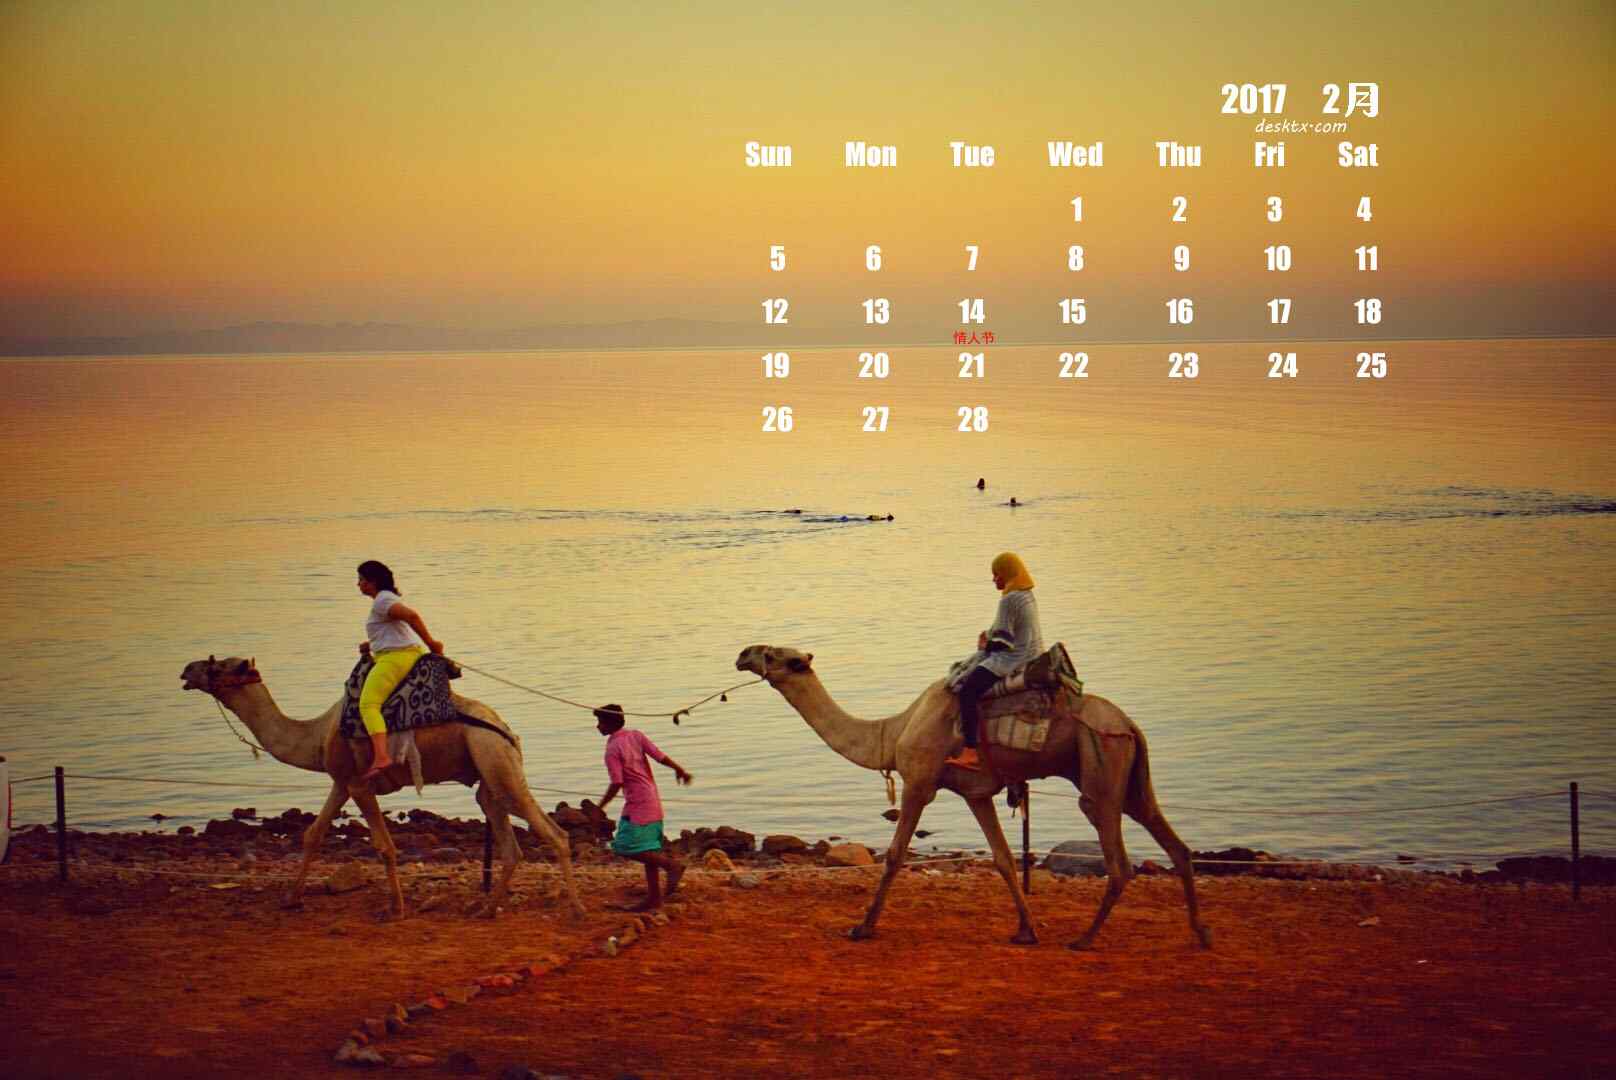 2017年2月日历壁纸之骑骆驼的人